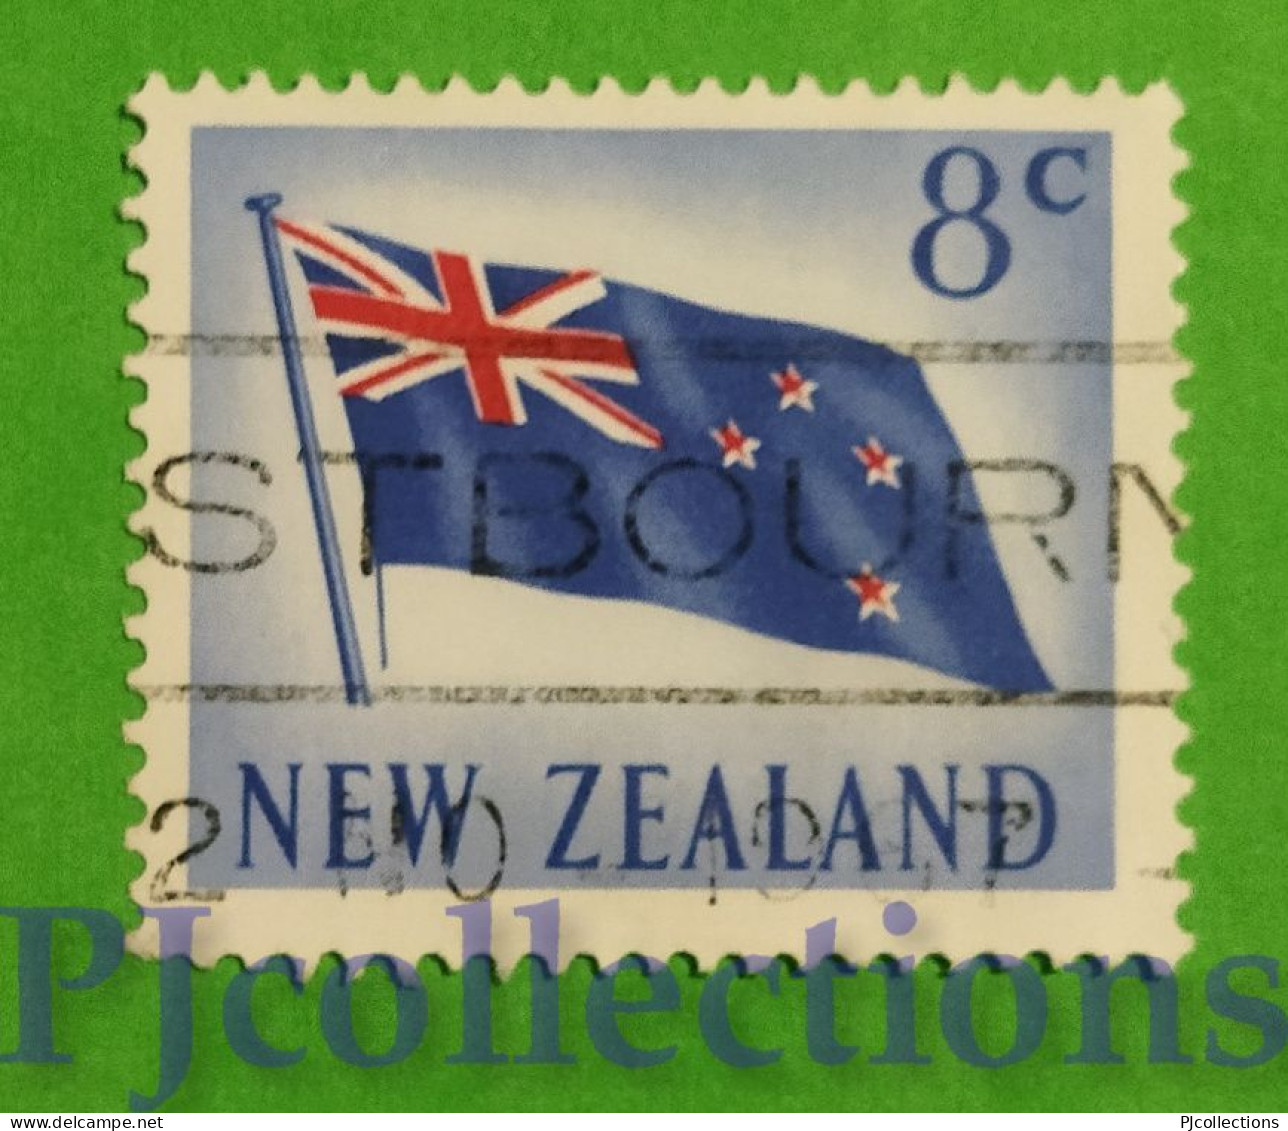 S471 - NUOVA ZELANDA - NEW ZEALAND 1967 BANDIERA - FLAG 8c USATO - USED - Used Stamps